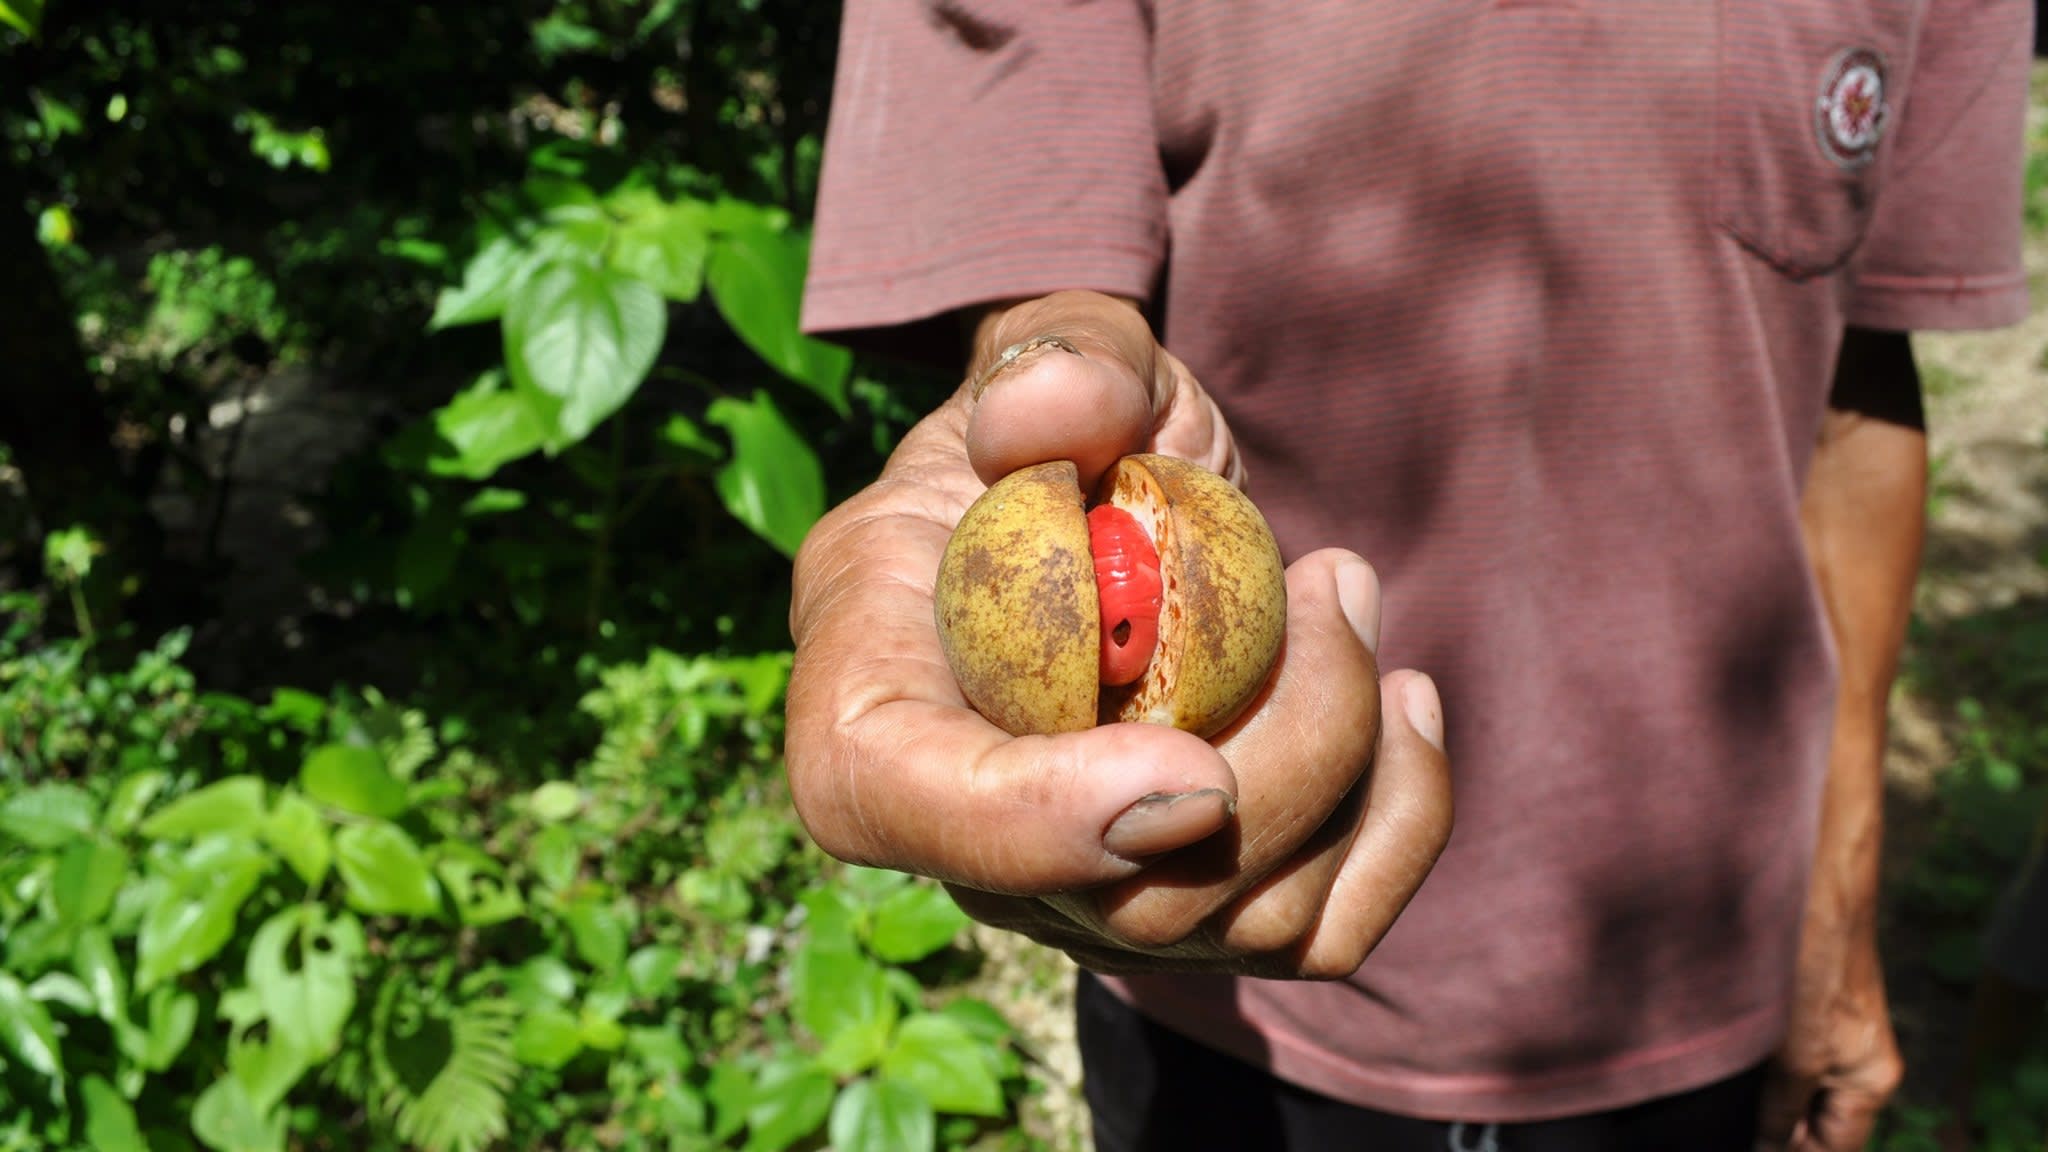  Homme tenant un fruit de muscade mûr avec un arille rouge vif, qui sera séché et vendu comme masse 